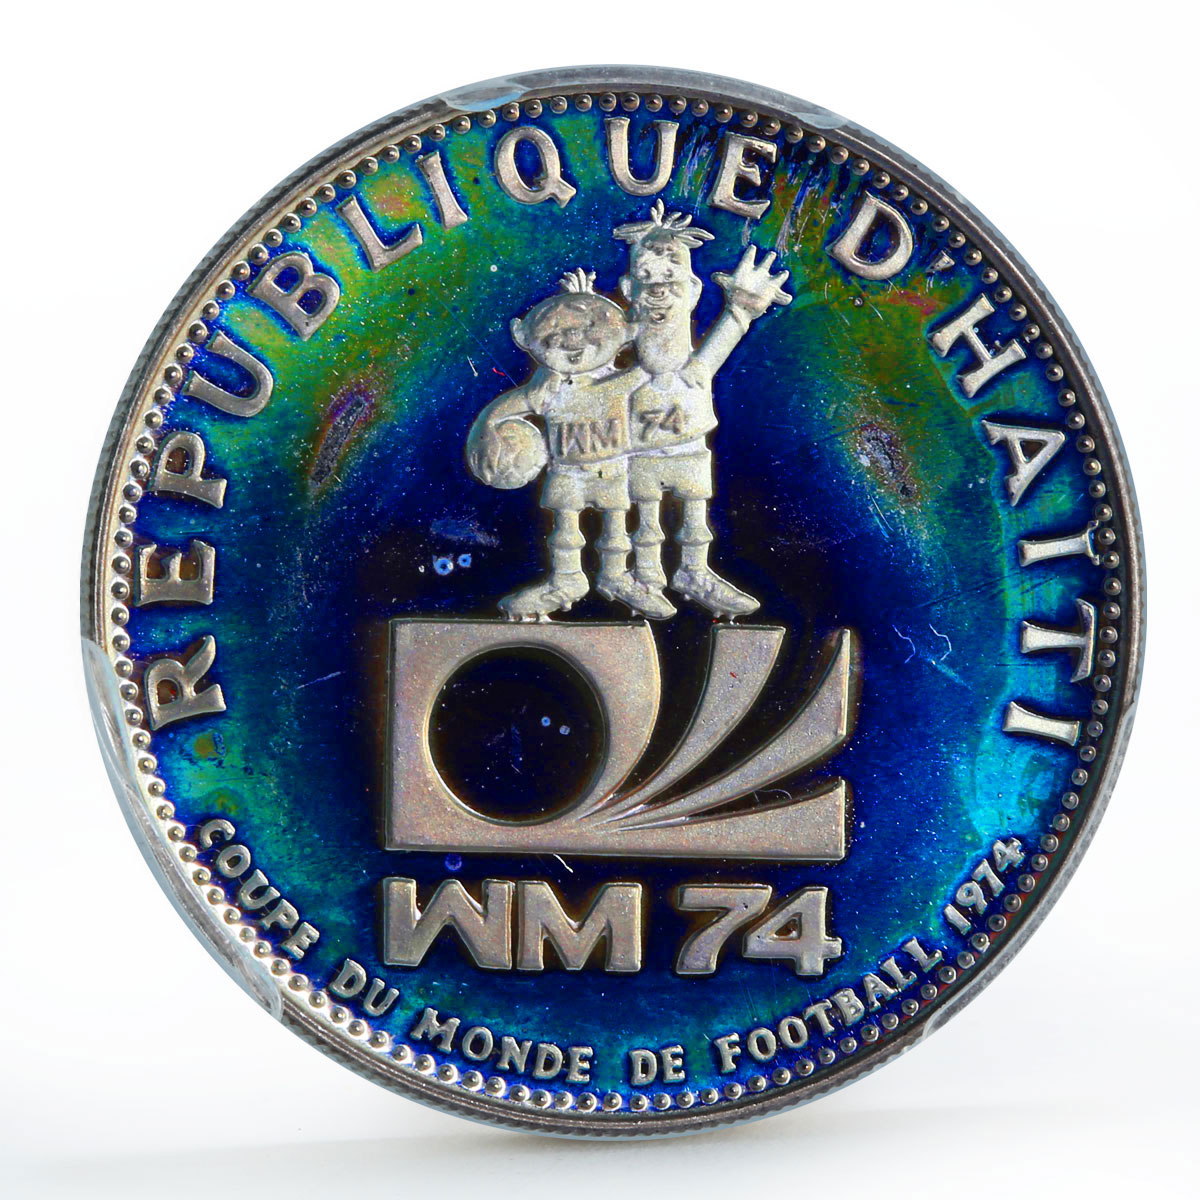 Haiti 25 gourdes Football World Cup PR67 PCGS Rainbow Reflect silver coin 1973